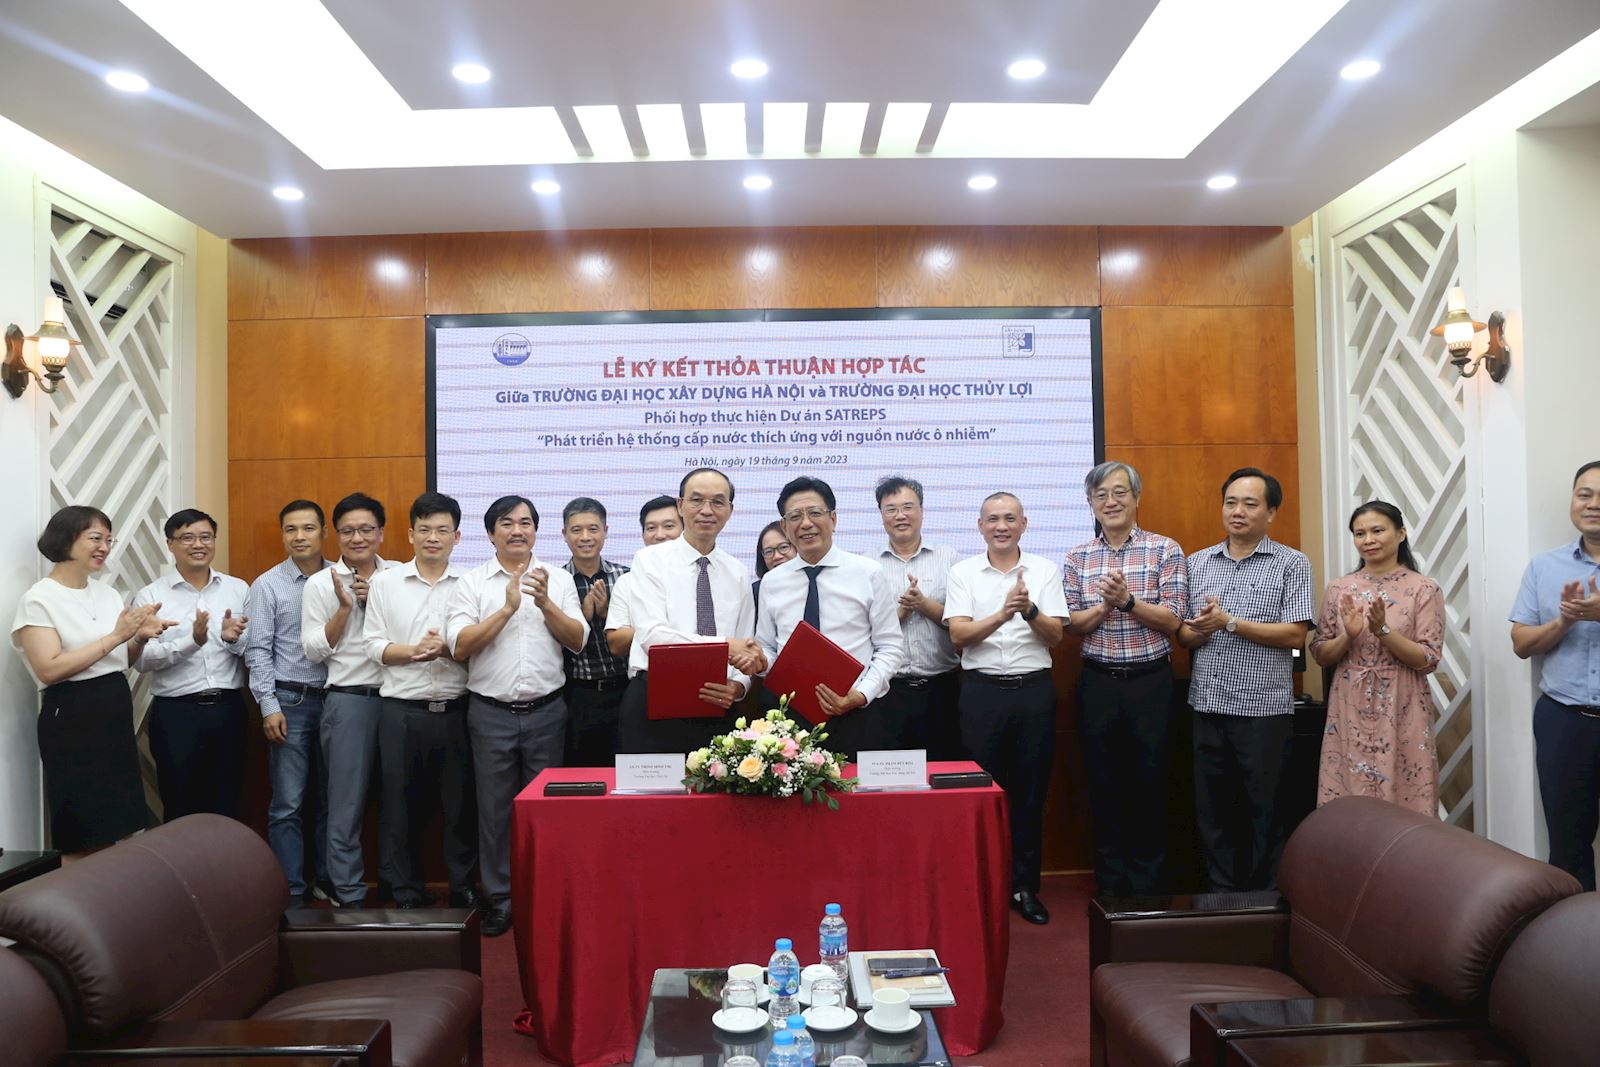 Lễ ký kết thỏa thuận hợp tác giữa Trường Đại học Xây dựng Hà Nội và Trường Đại học Thủy Lợi